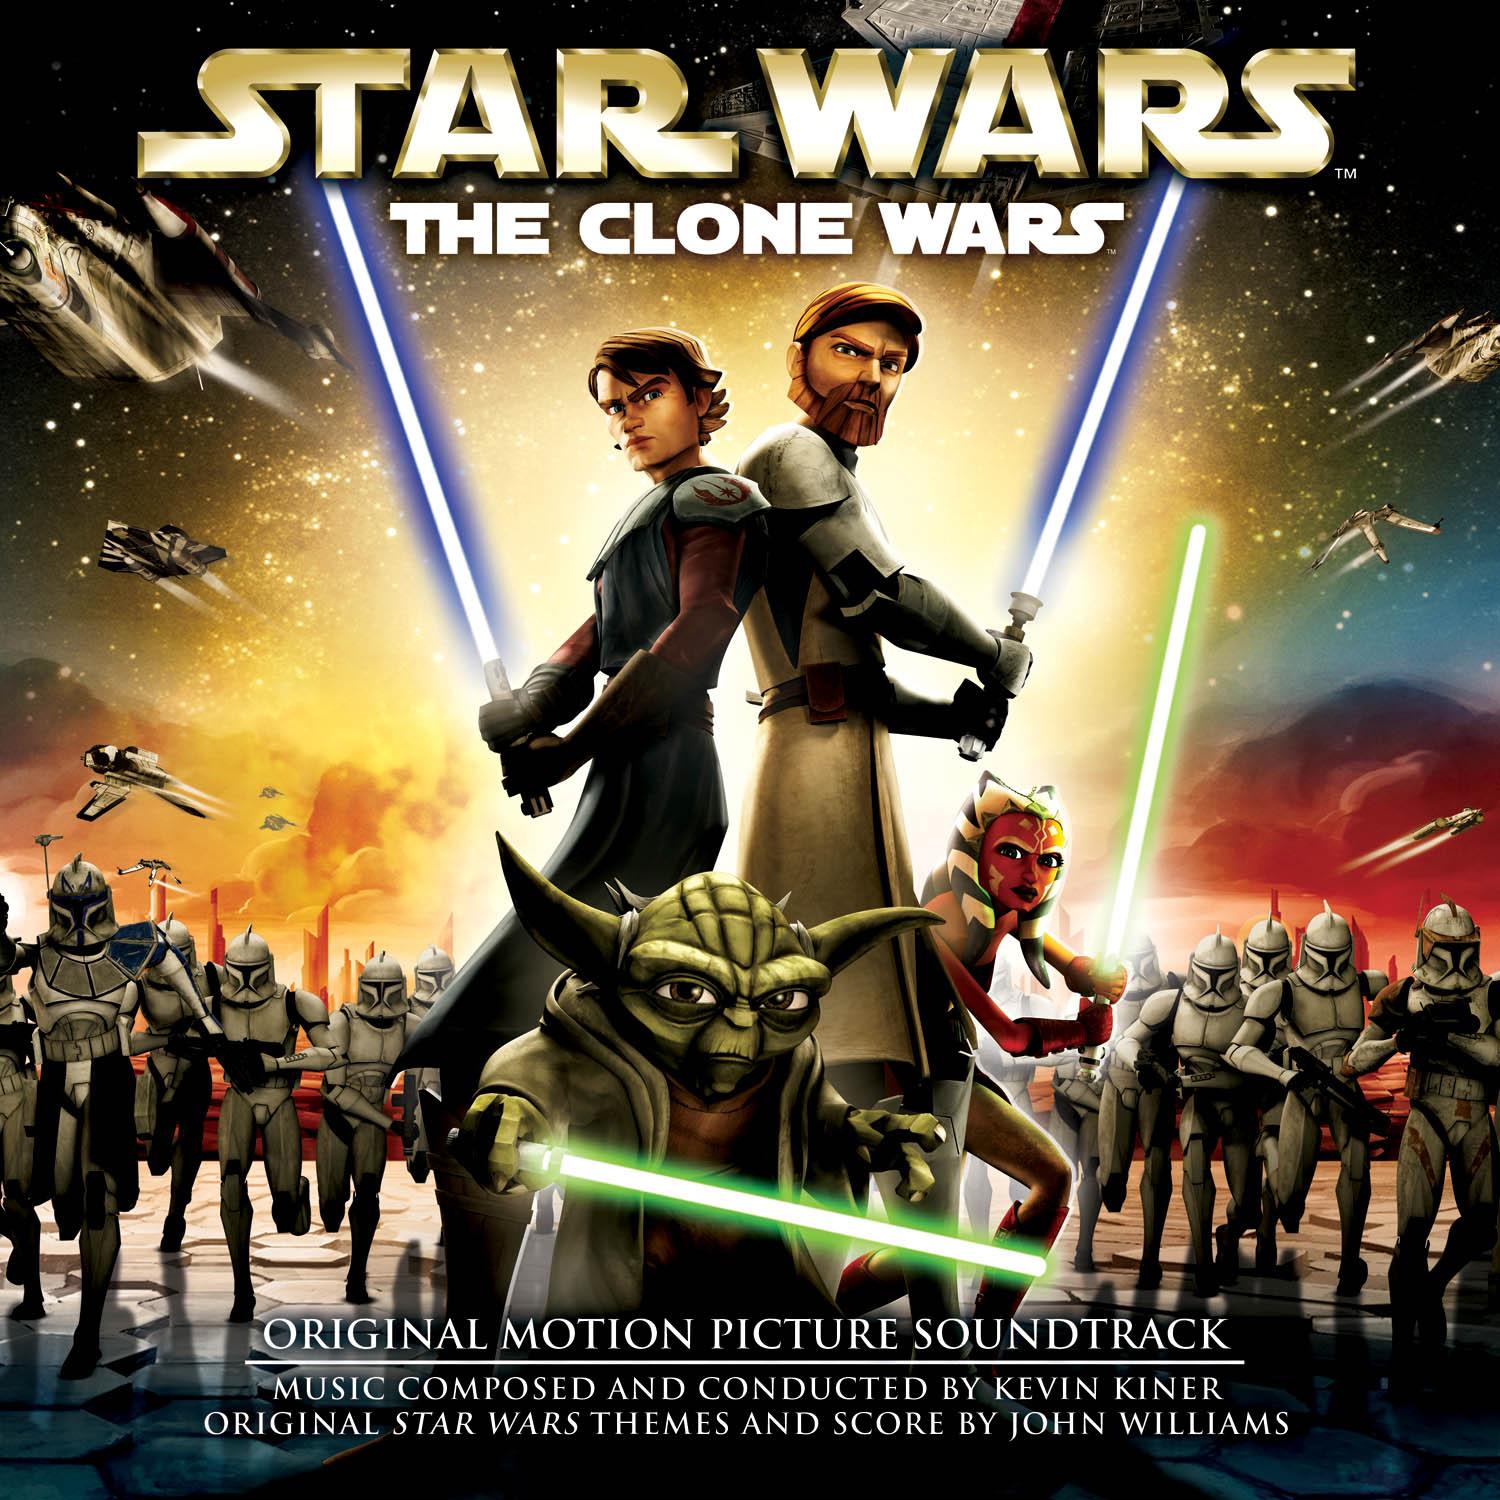 Star Wars: The Clone Wars (film) | Wookieepedia | Fandom